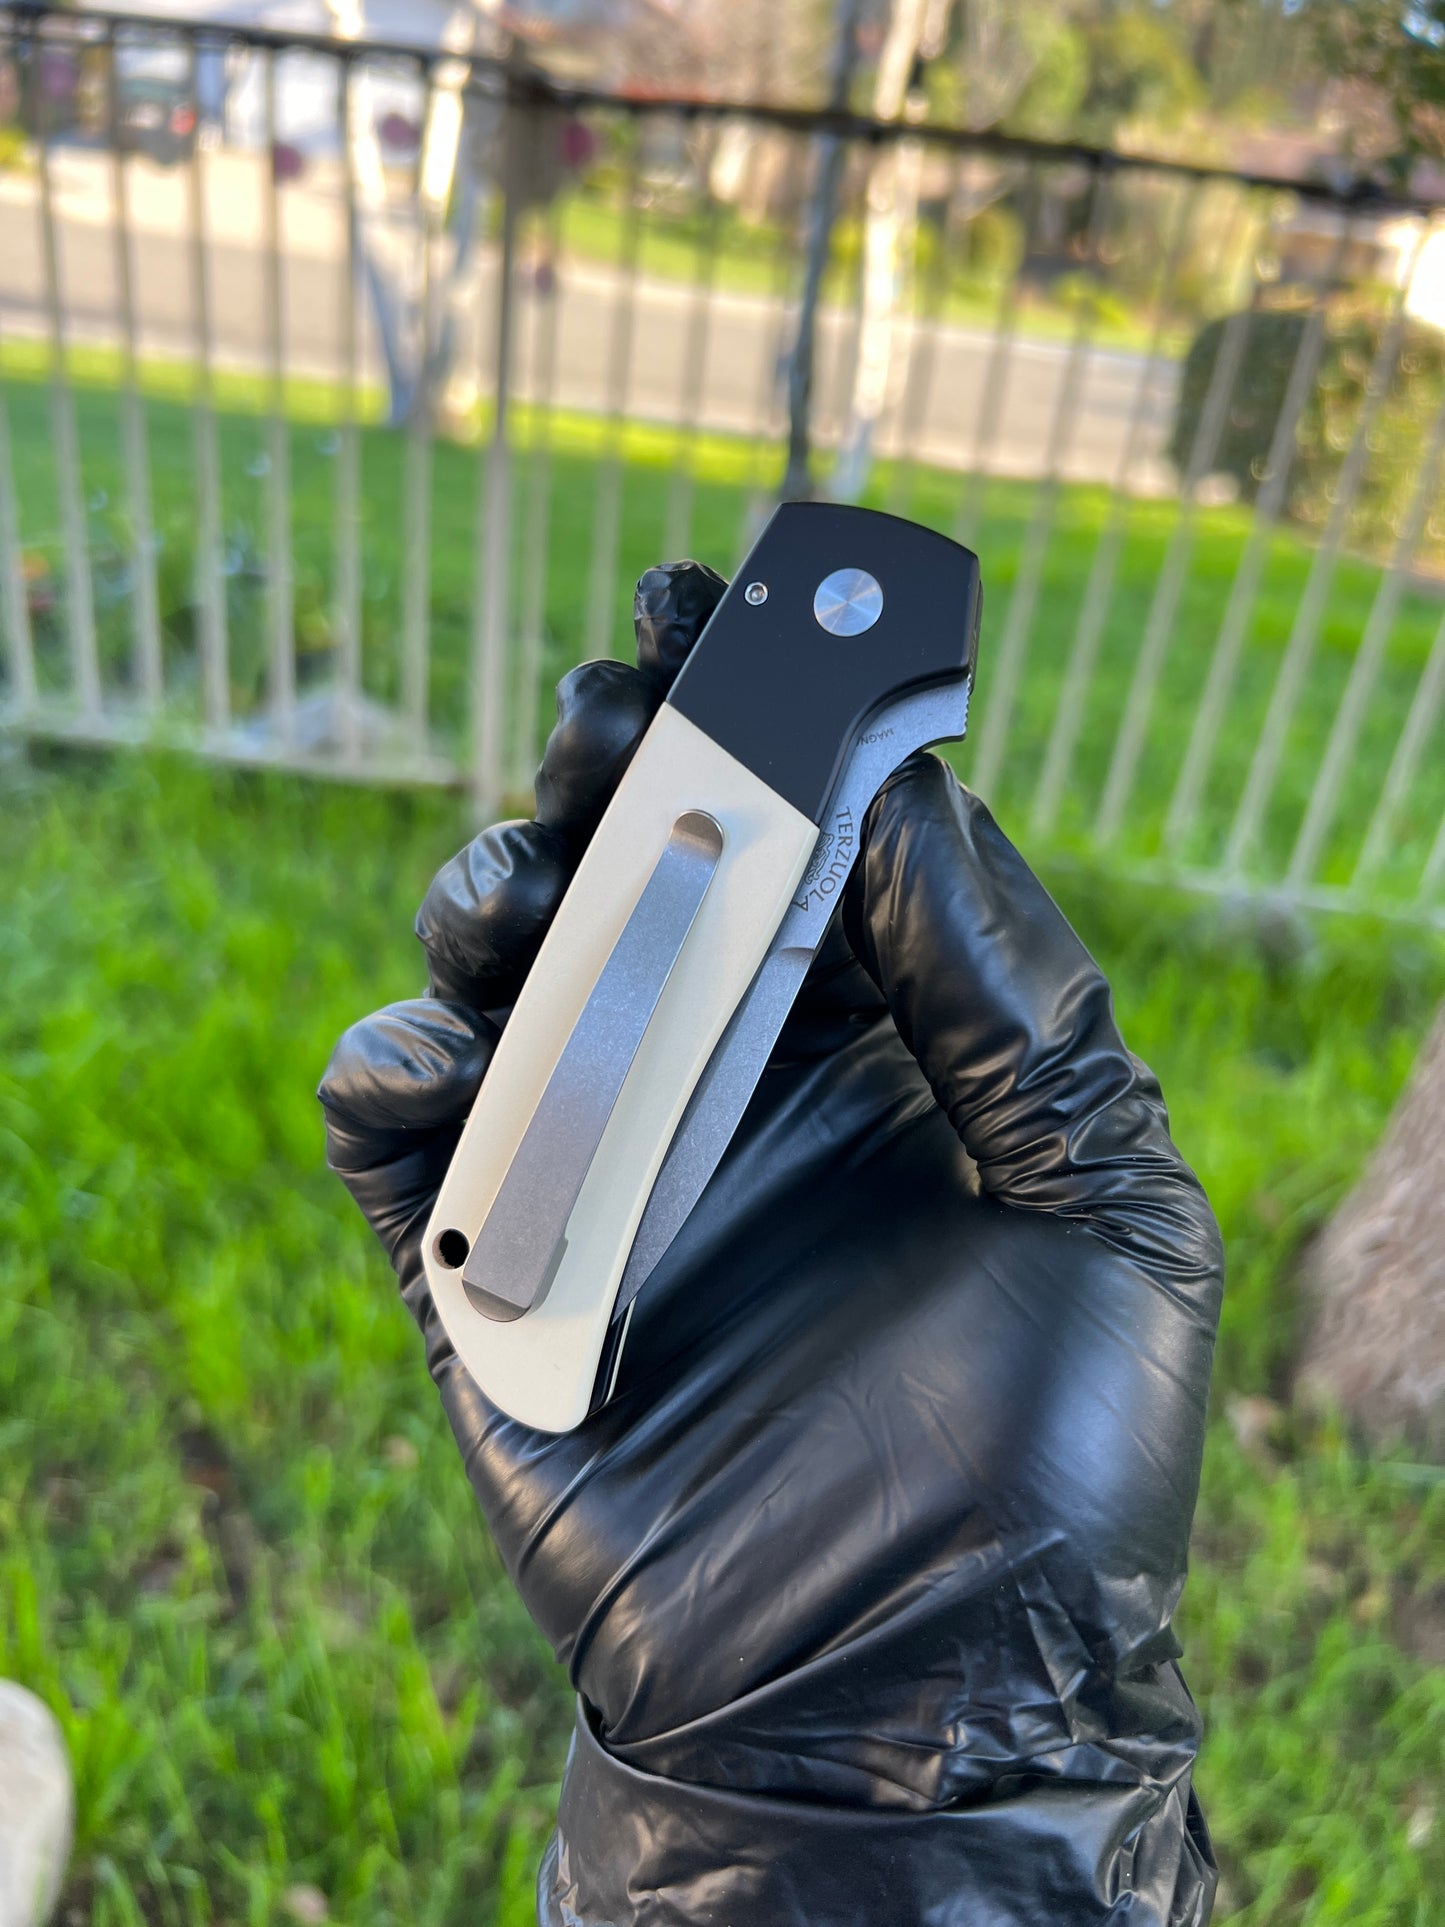 Pro-Tech Bob Terzuola ATCF Tuxedo AUTO Folding Knife 3.5" MagnaCut Black DLC Drop Point Blade, Black Aluminum Handles with Ivory Micarta Inlays - BT2752